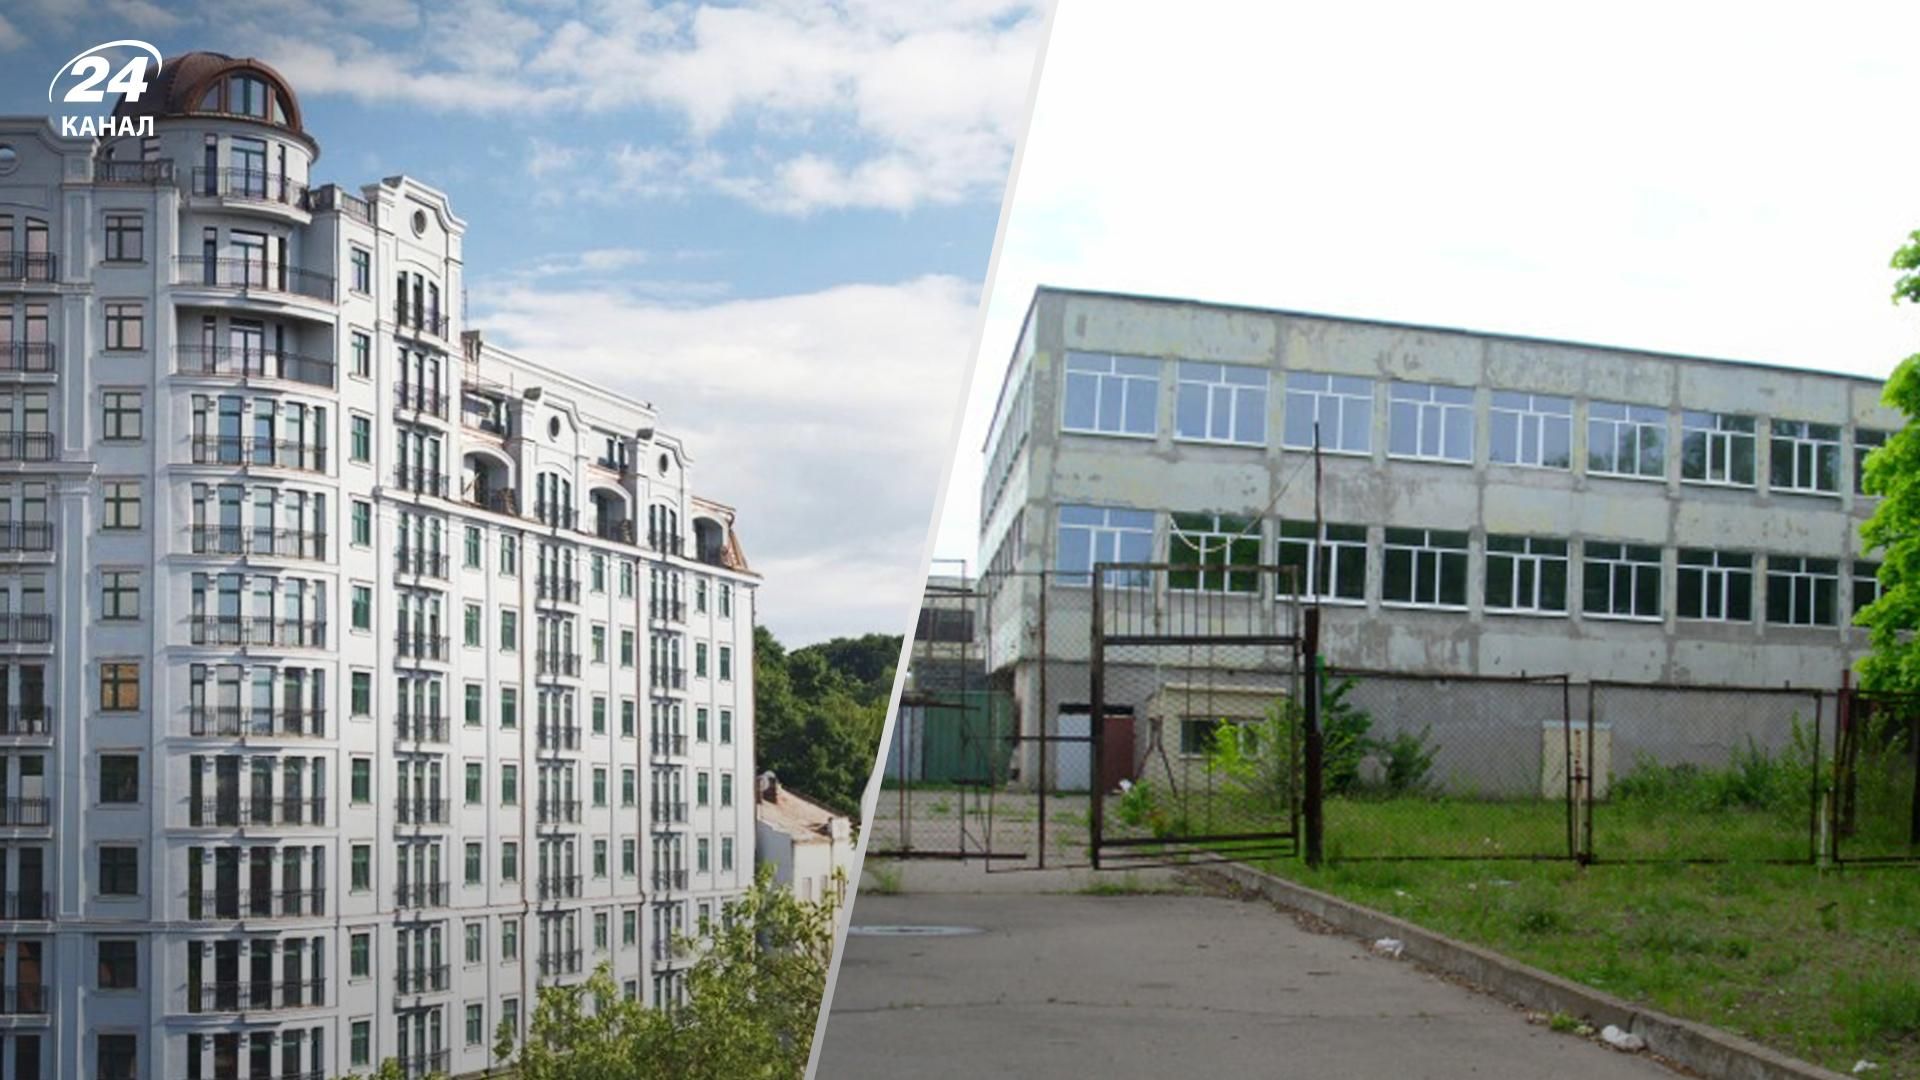 Элитная недвижимость, теплица и лаборатория  Укрэксимбанк выставил на торги 24 лота - Недвижимость